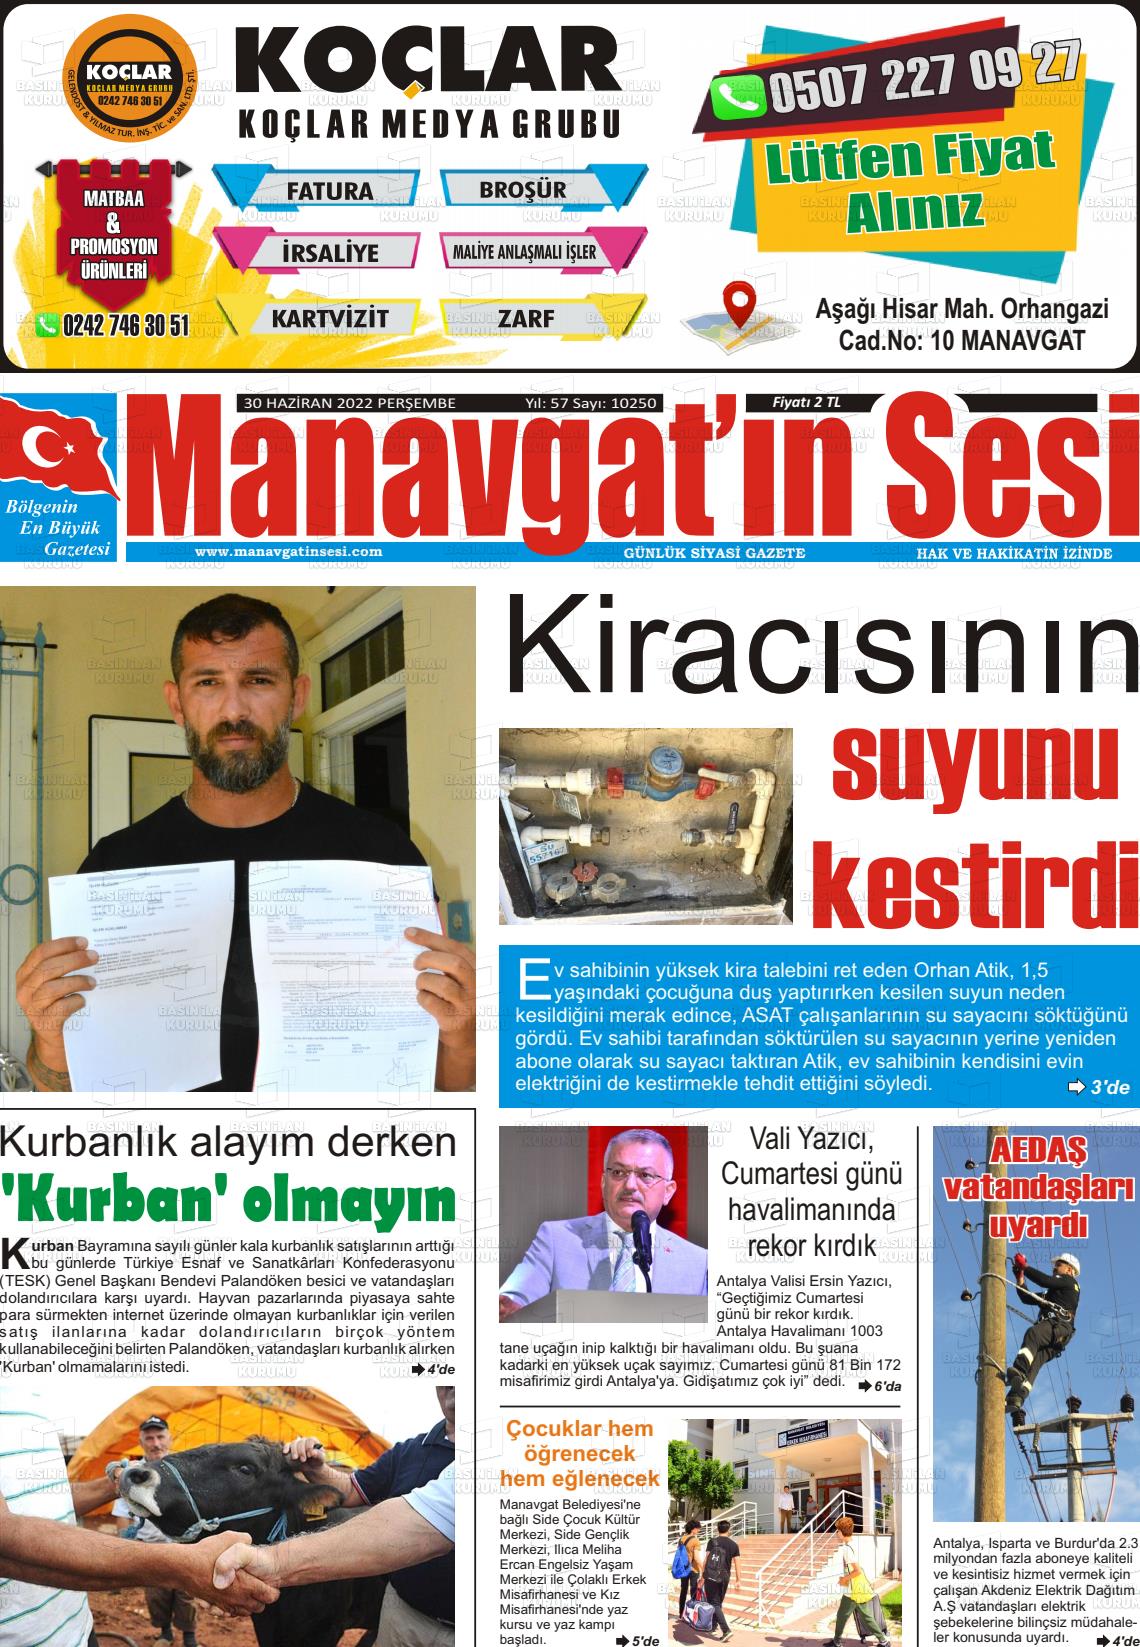 30 Haziran 2022 Manavgat'ın Sesi Gazete Manşeti